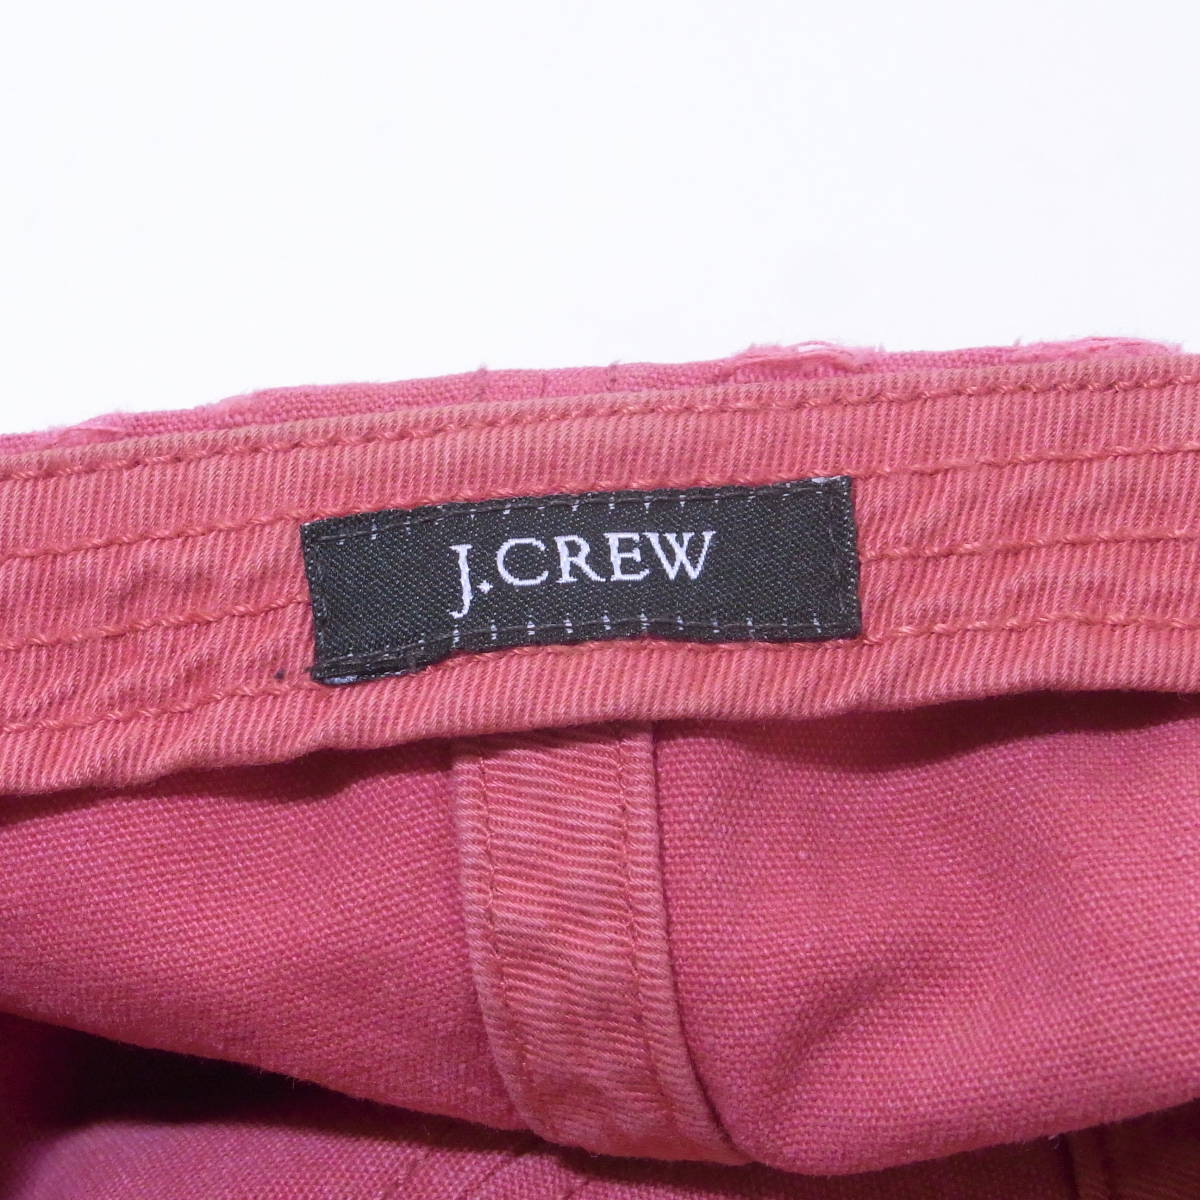 J.crew / Cotton Cap / Pink /ジェイ・クルー キャップ 帽子 Brooks Brothers ブルックス・ブラザーズ Polo Ralph Lauren ラルフローレン_画像6